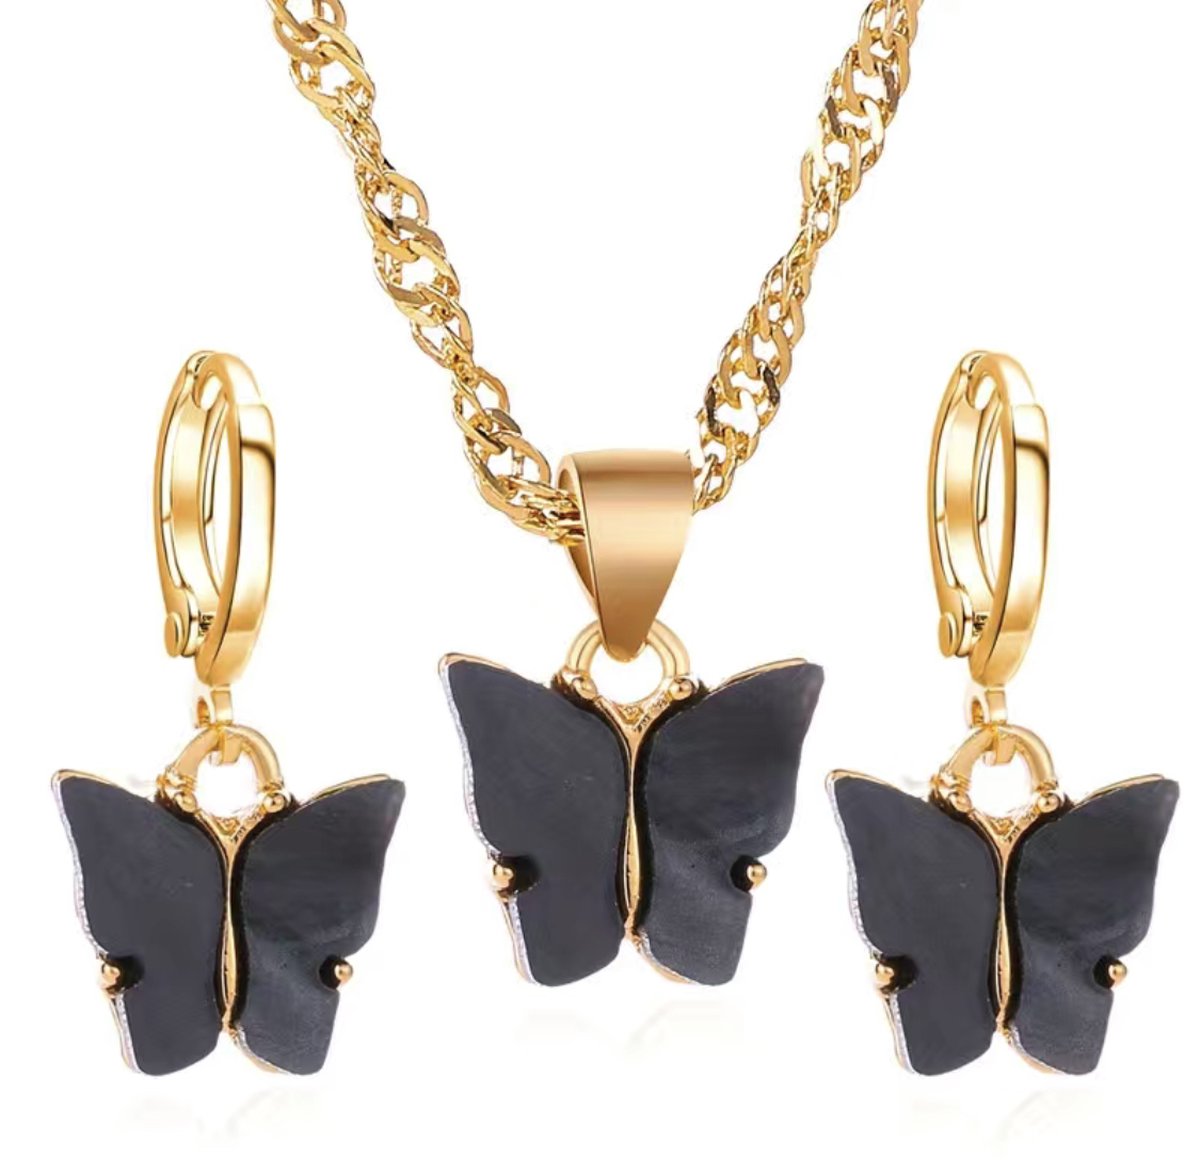 Beads by Chantal - vlinder oorbellen & vlinder ketting - zwart - ring oorbellen - vlinder acryl